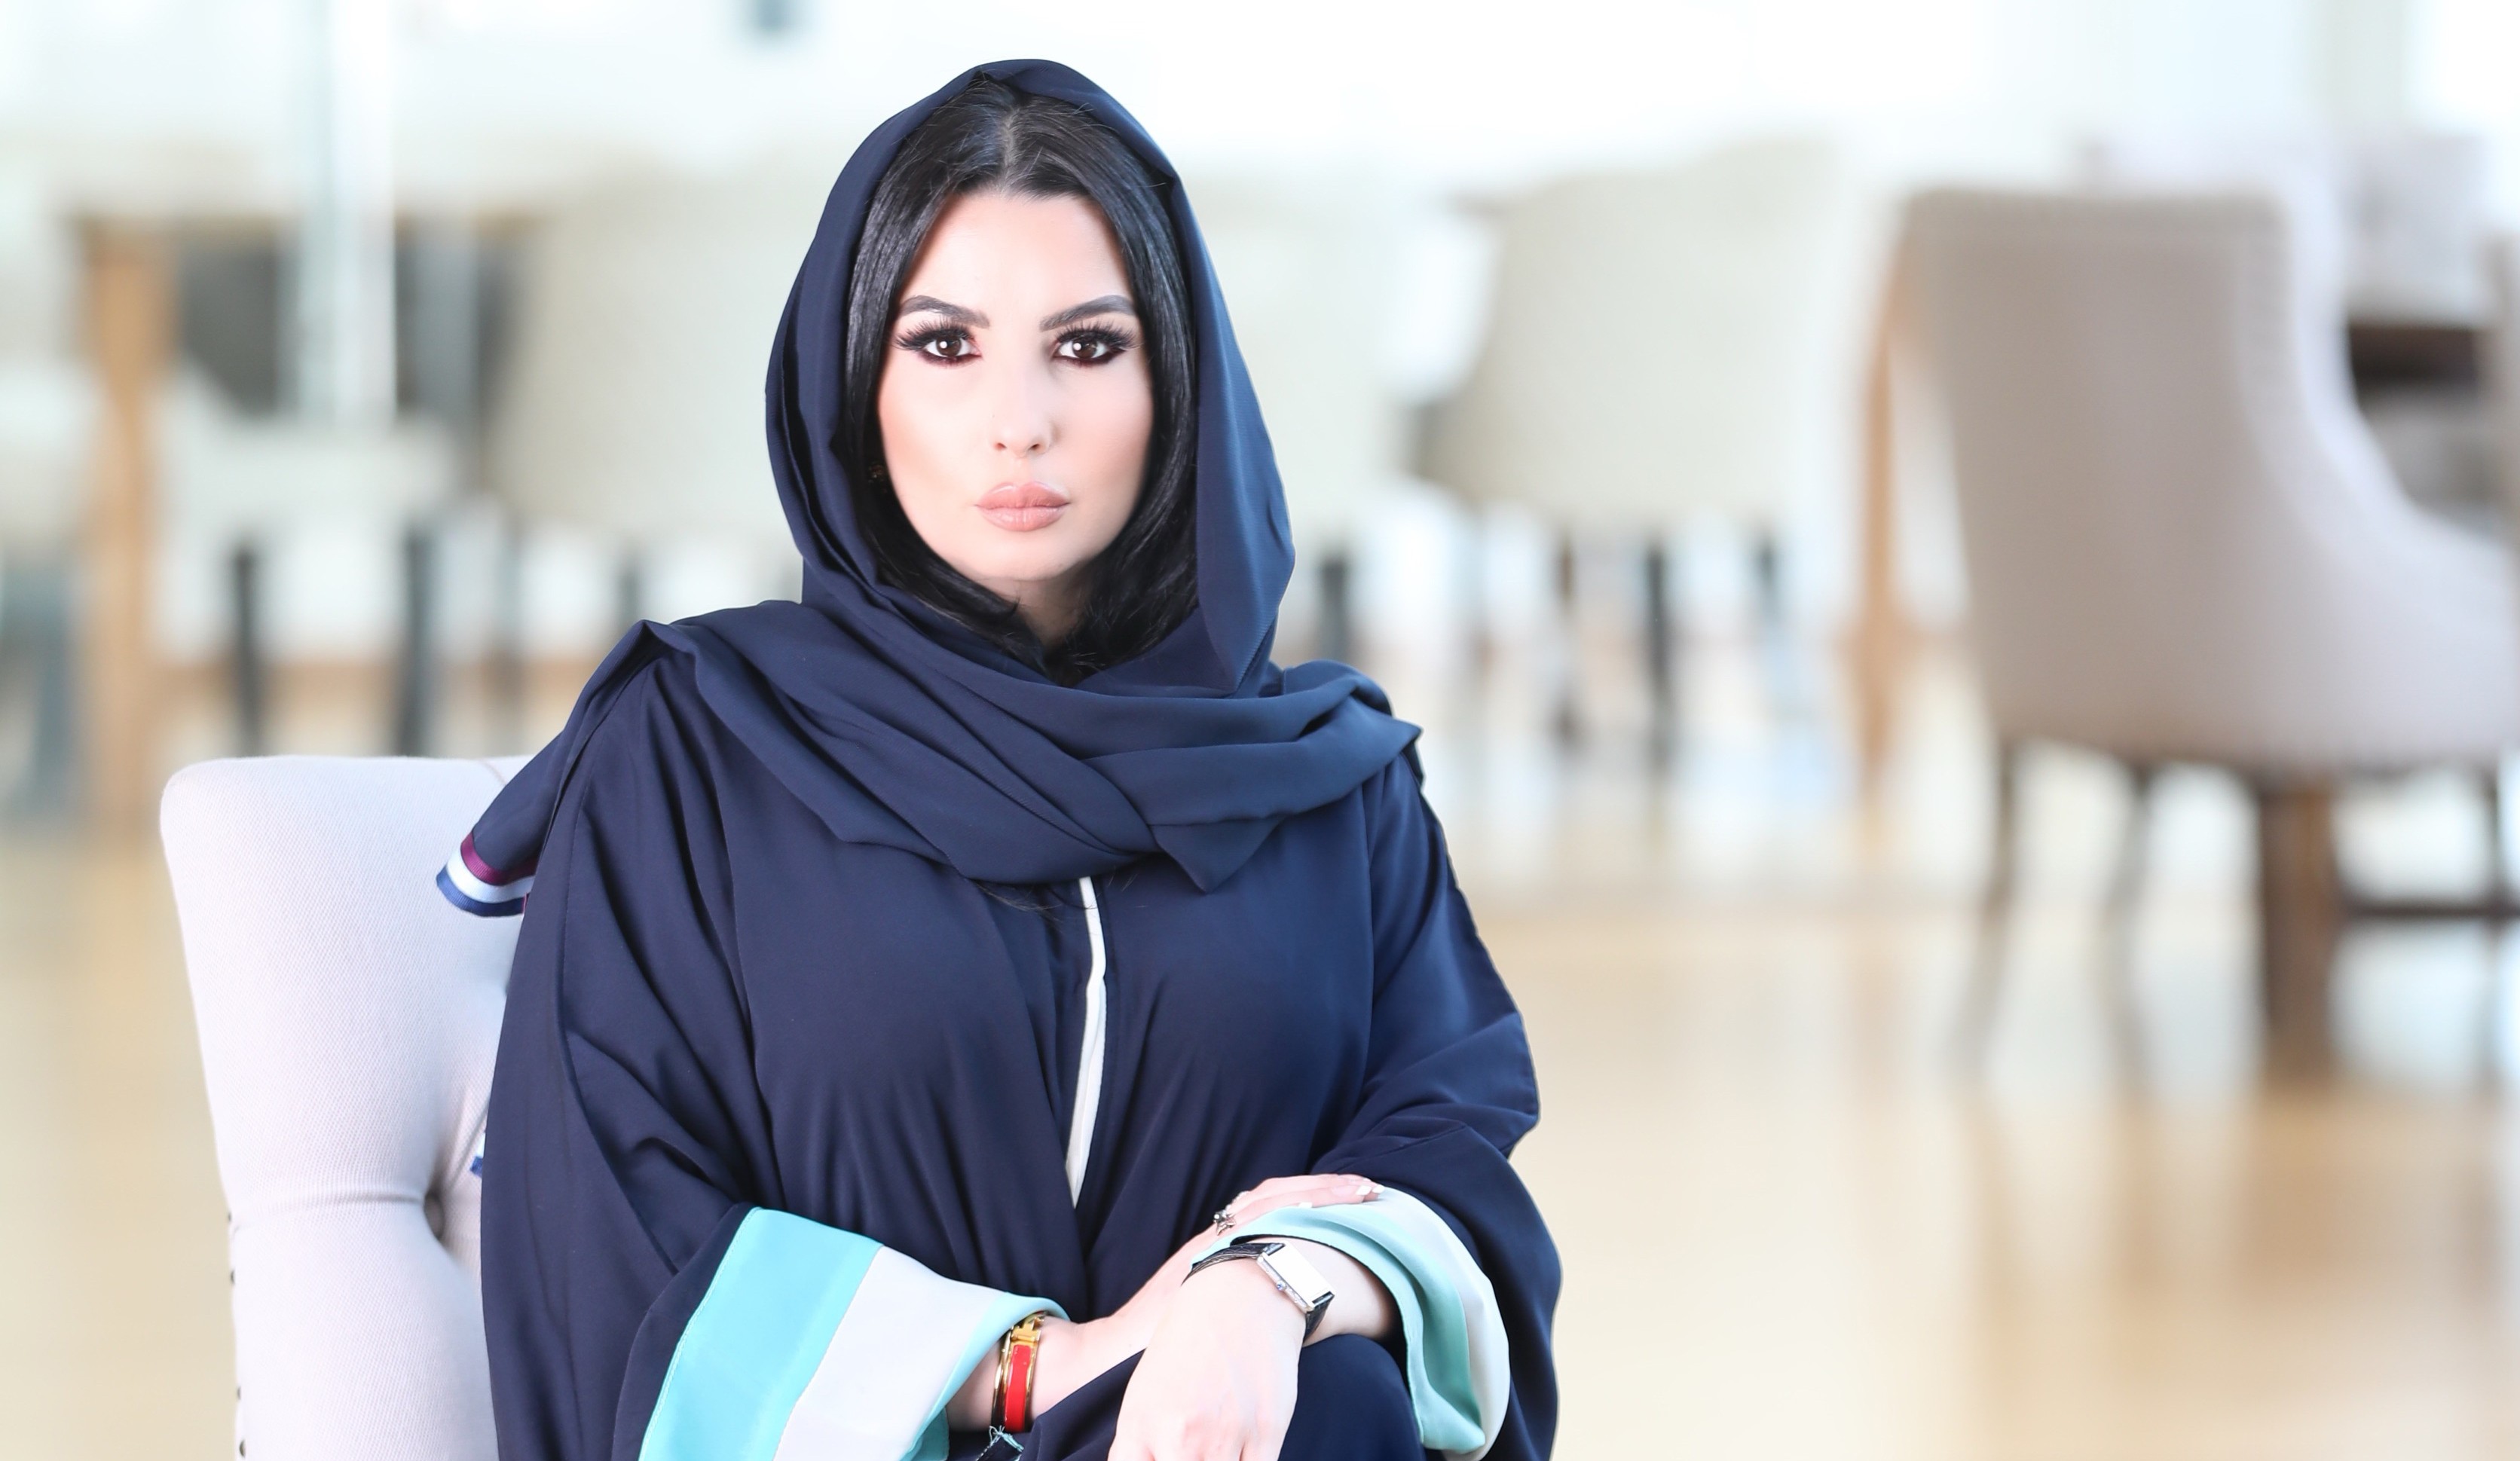 مقابلة: سيدة الأعمال ليلى أبو زيد تتحدث لمجلة "أرابيسك لندن" حول دور المرأة السعودية في المرحلة الجديدة بالمملكة 